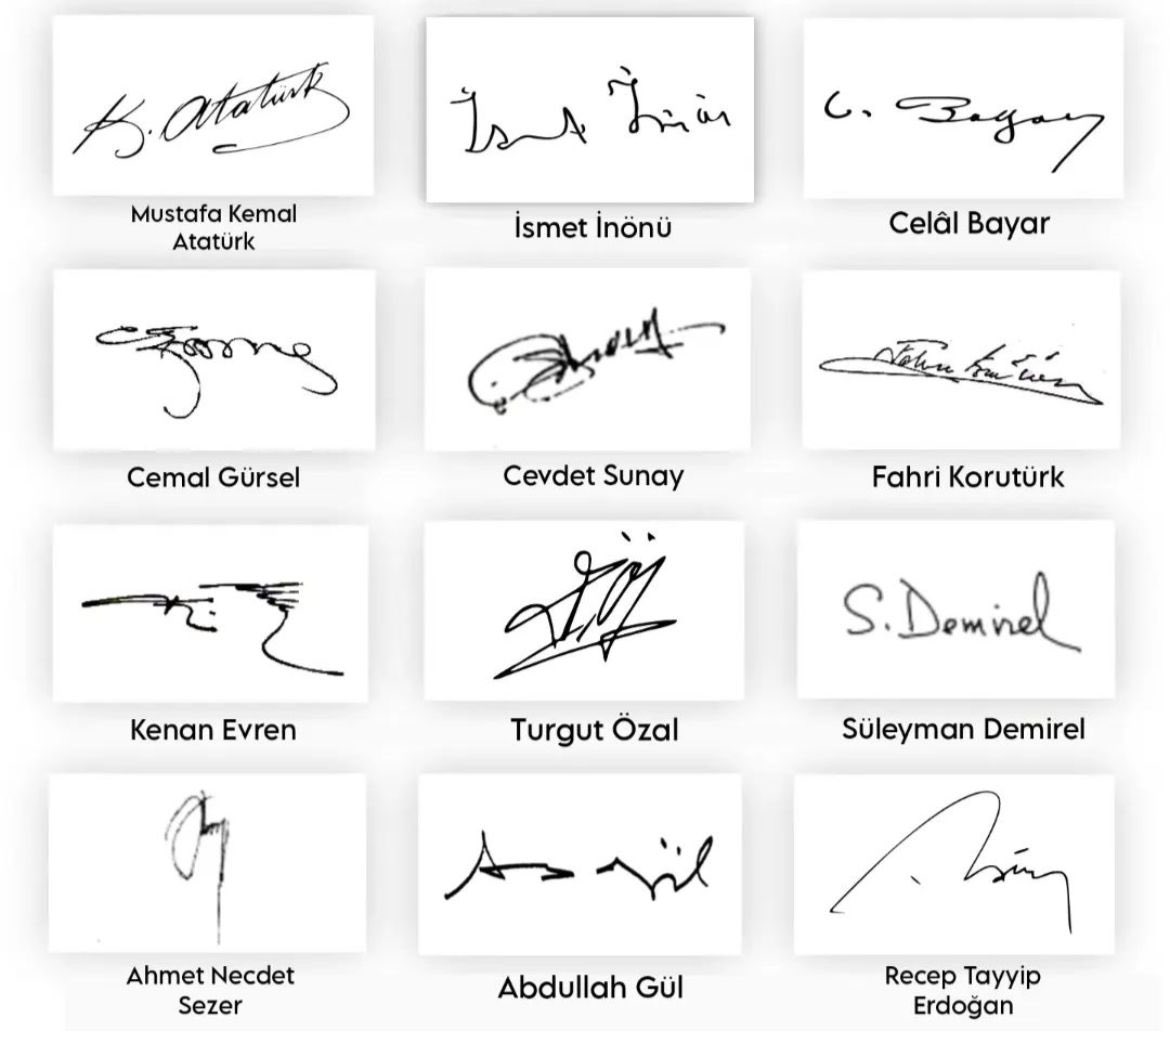 Cumhurbaşkanlarının imzaları. Atatürk her alanda olduğu gibi burada da kalitesini gösteriyor.